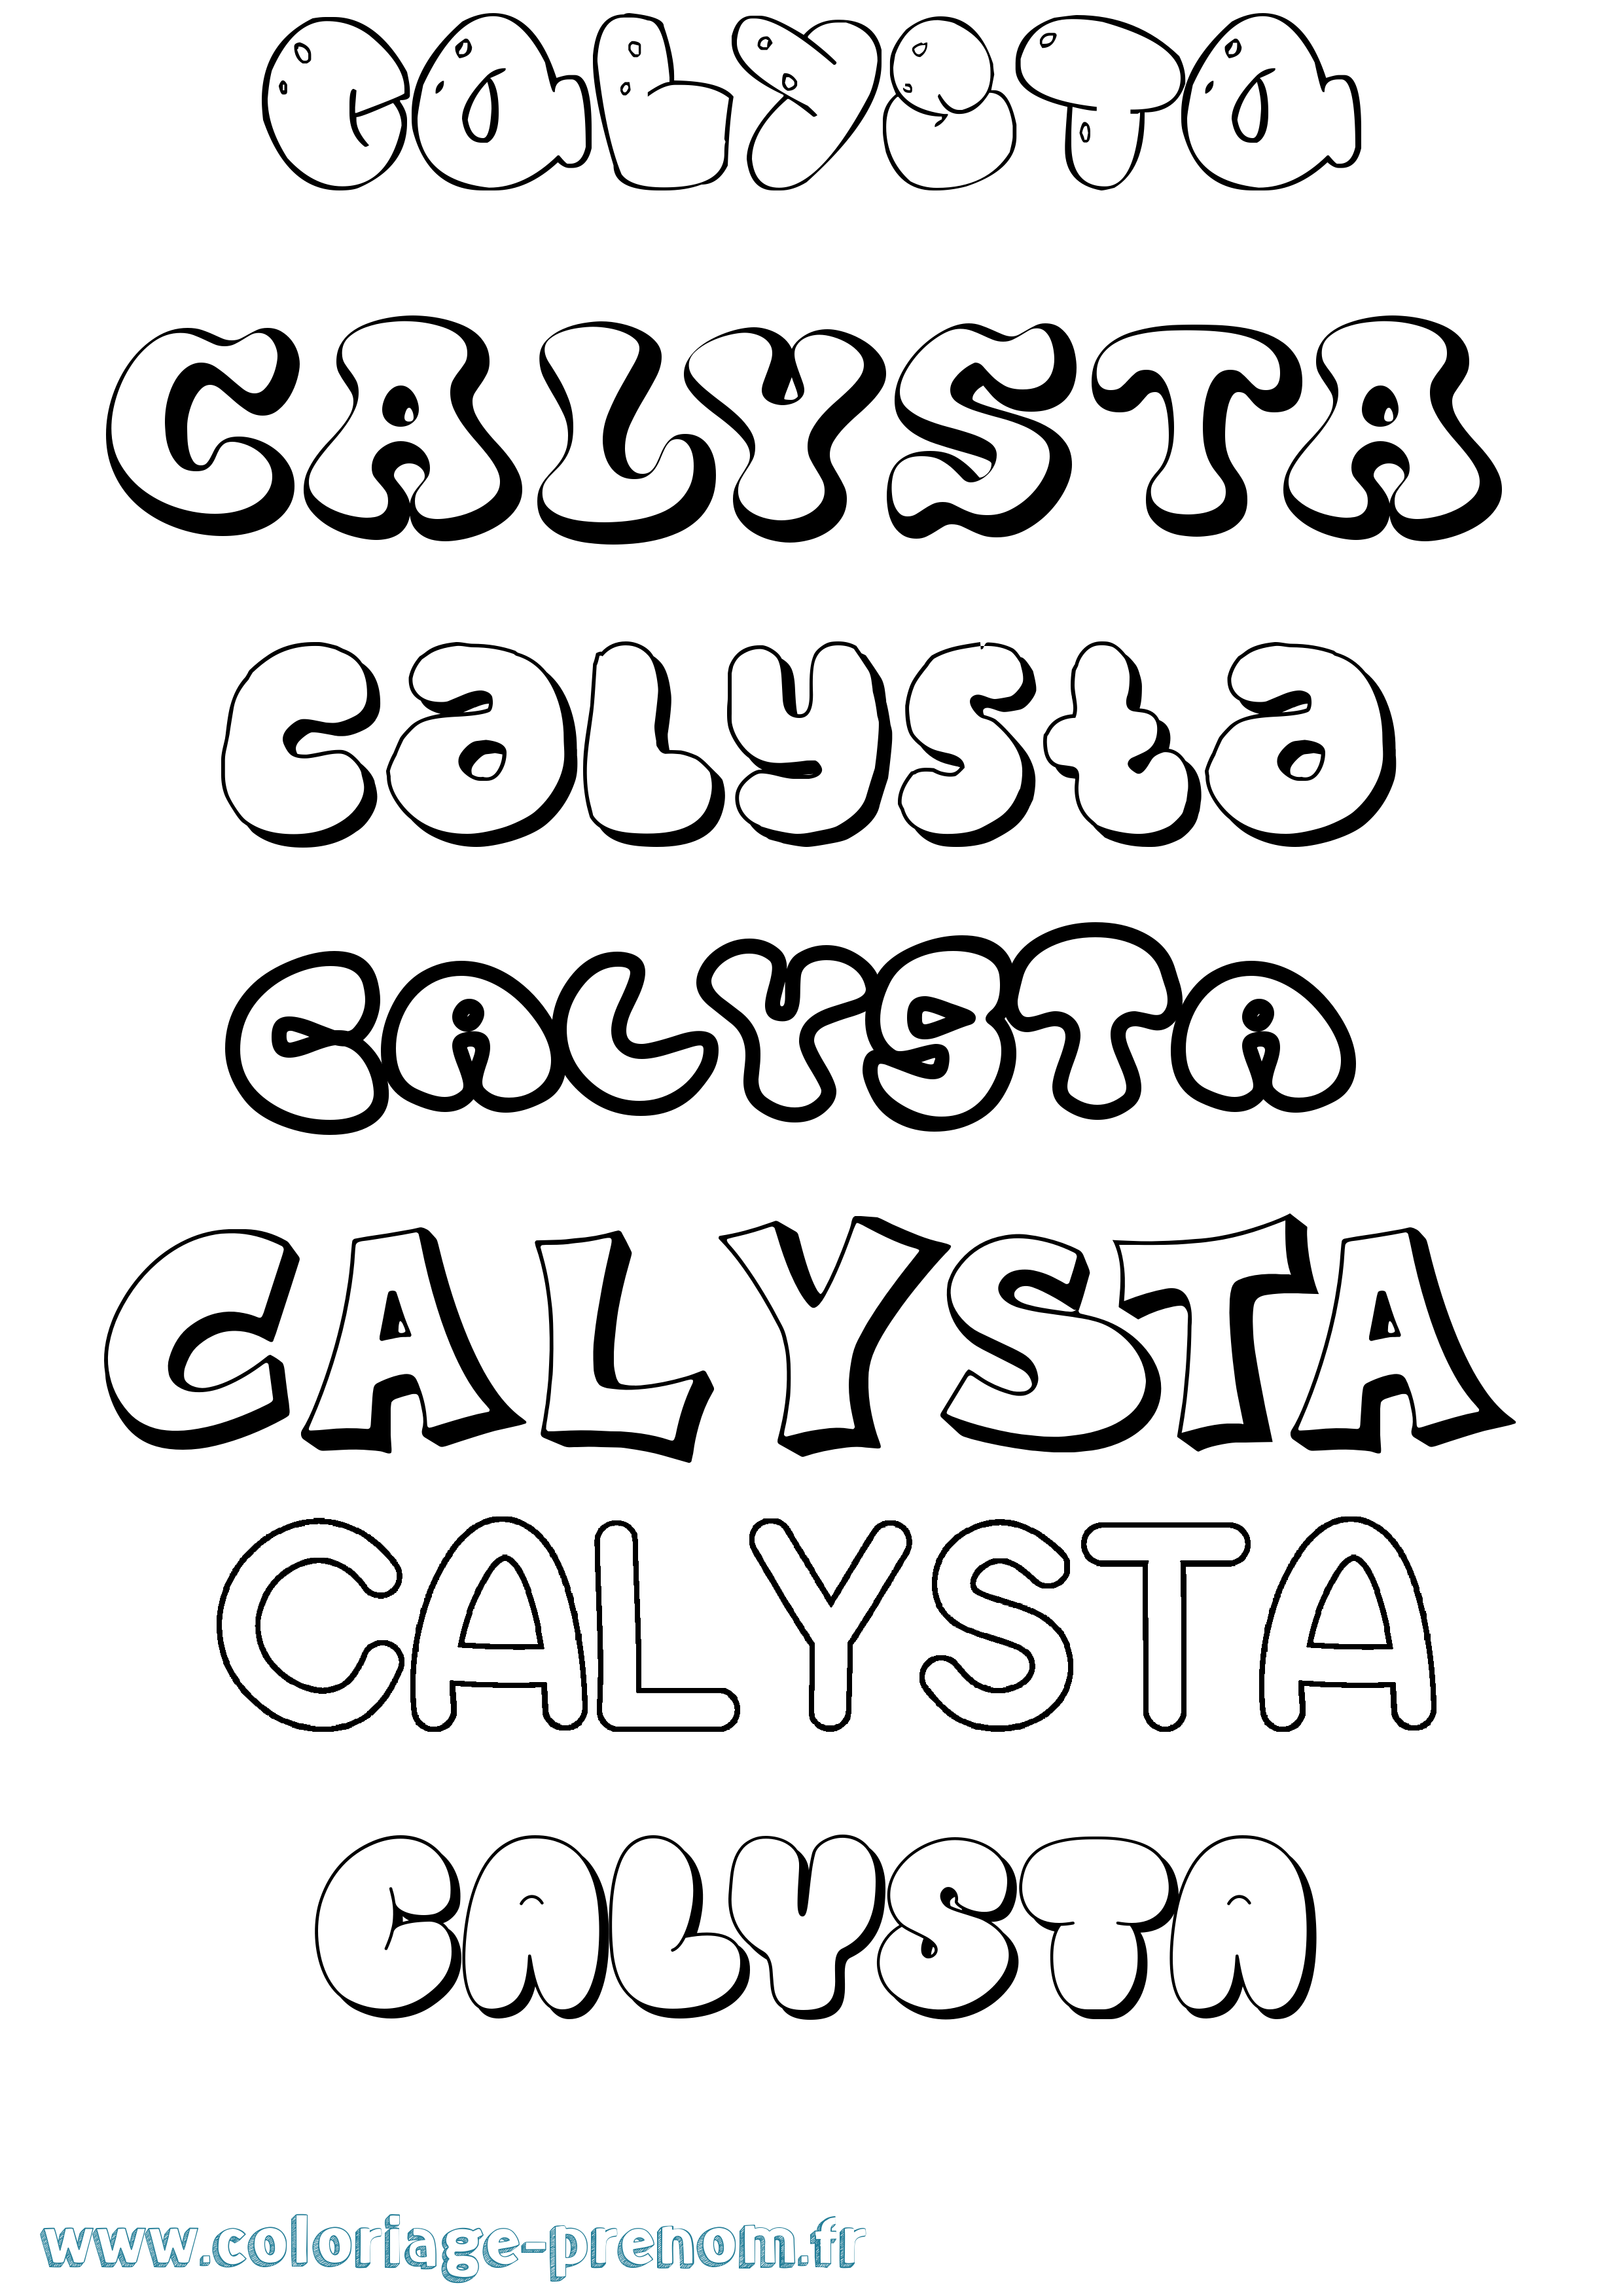 Coloriage prénom Calysta Bubble